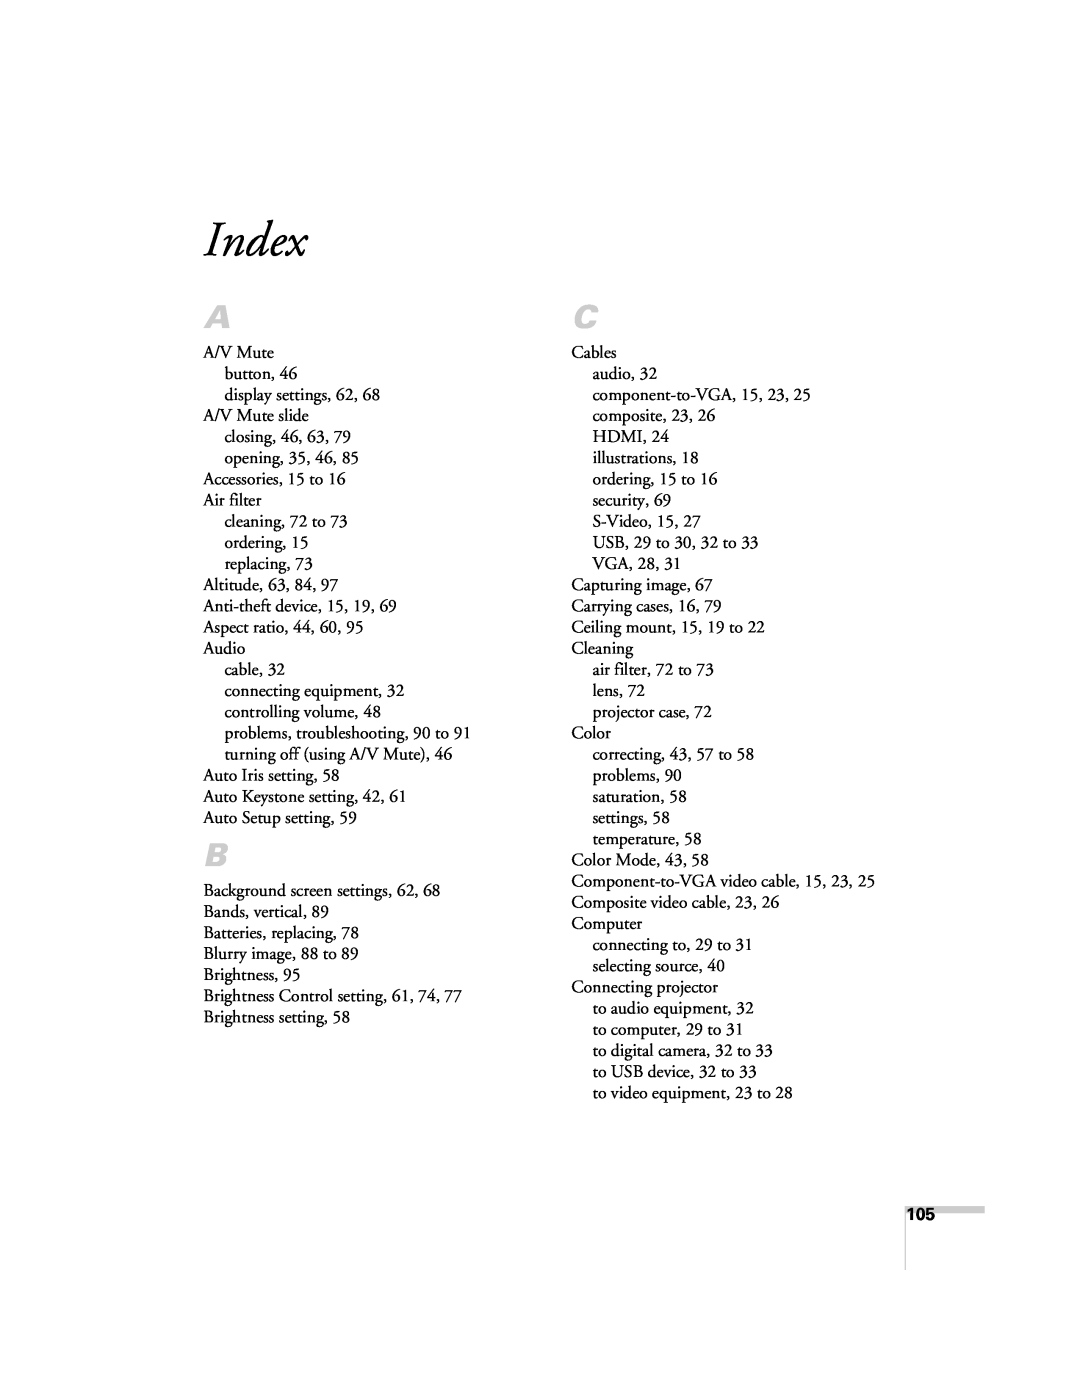 Univex 700 manual Index 